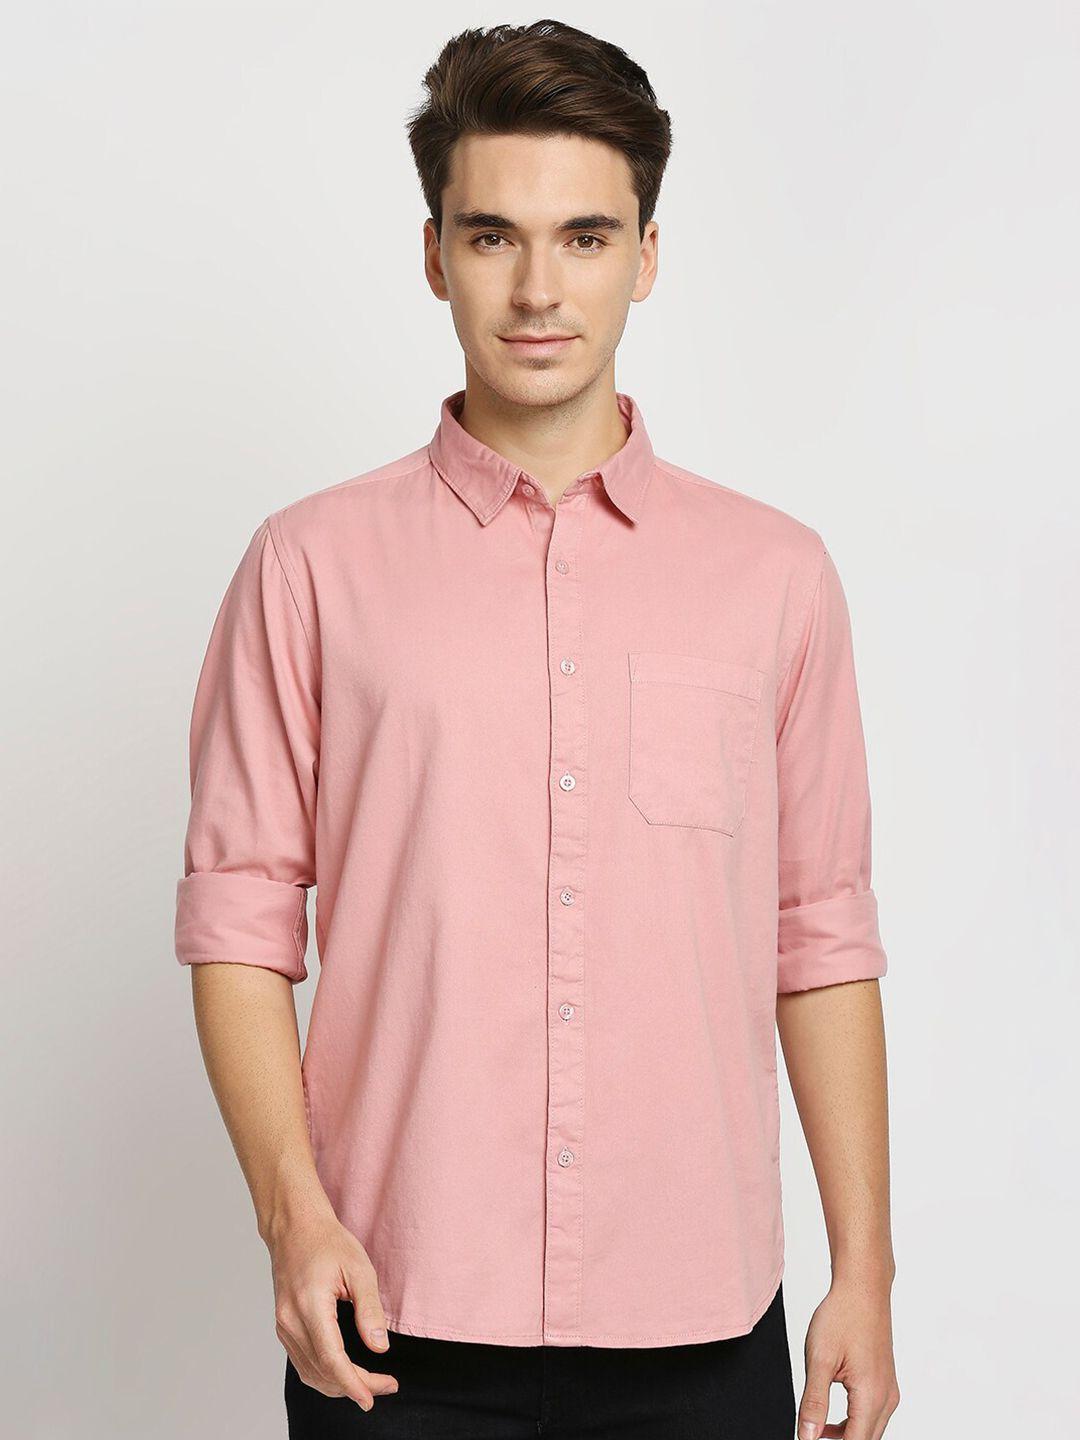 valen-club-men-slim-fit-pure-cotton-casual-shirt